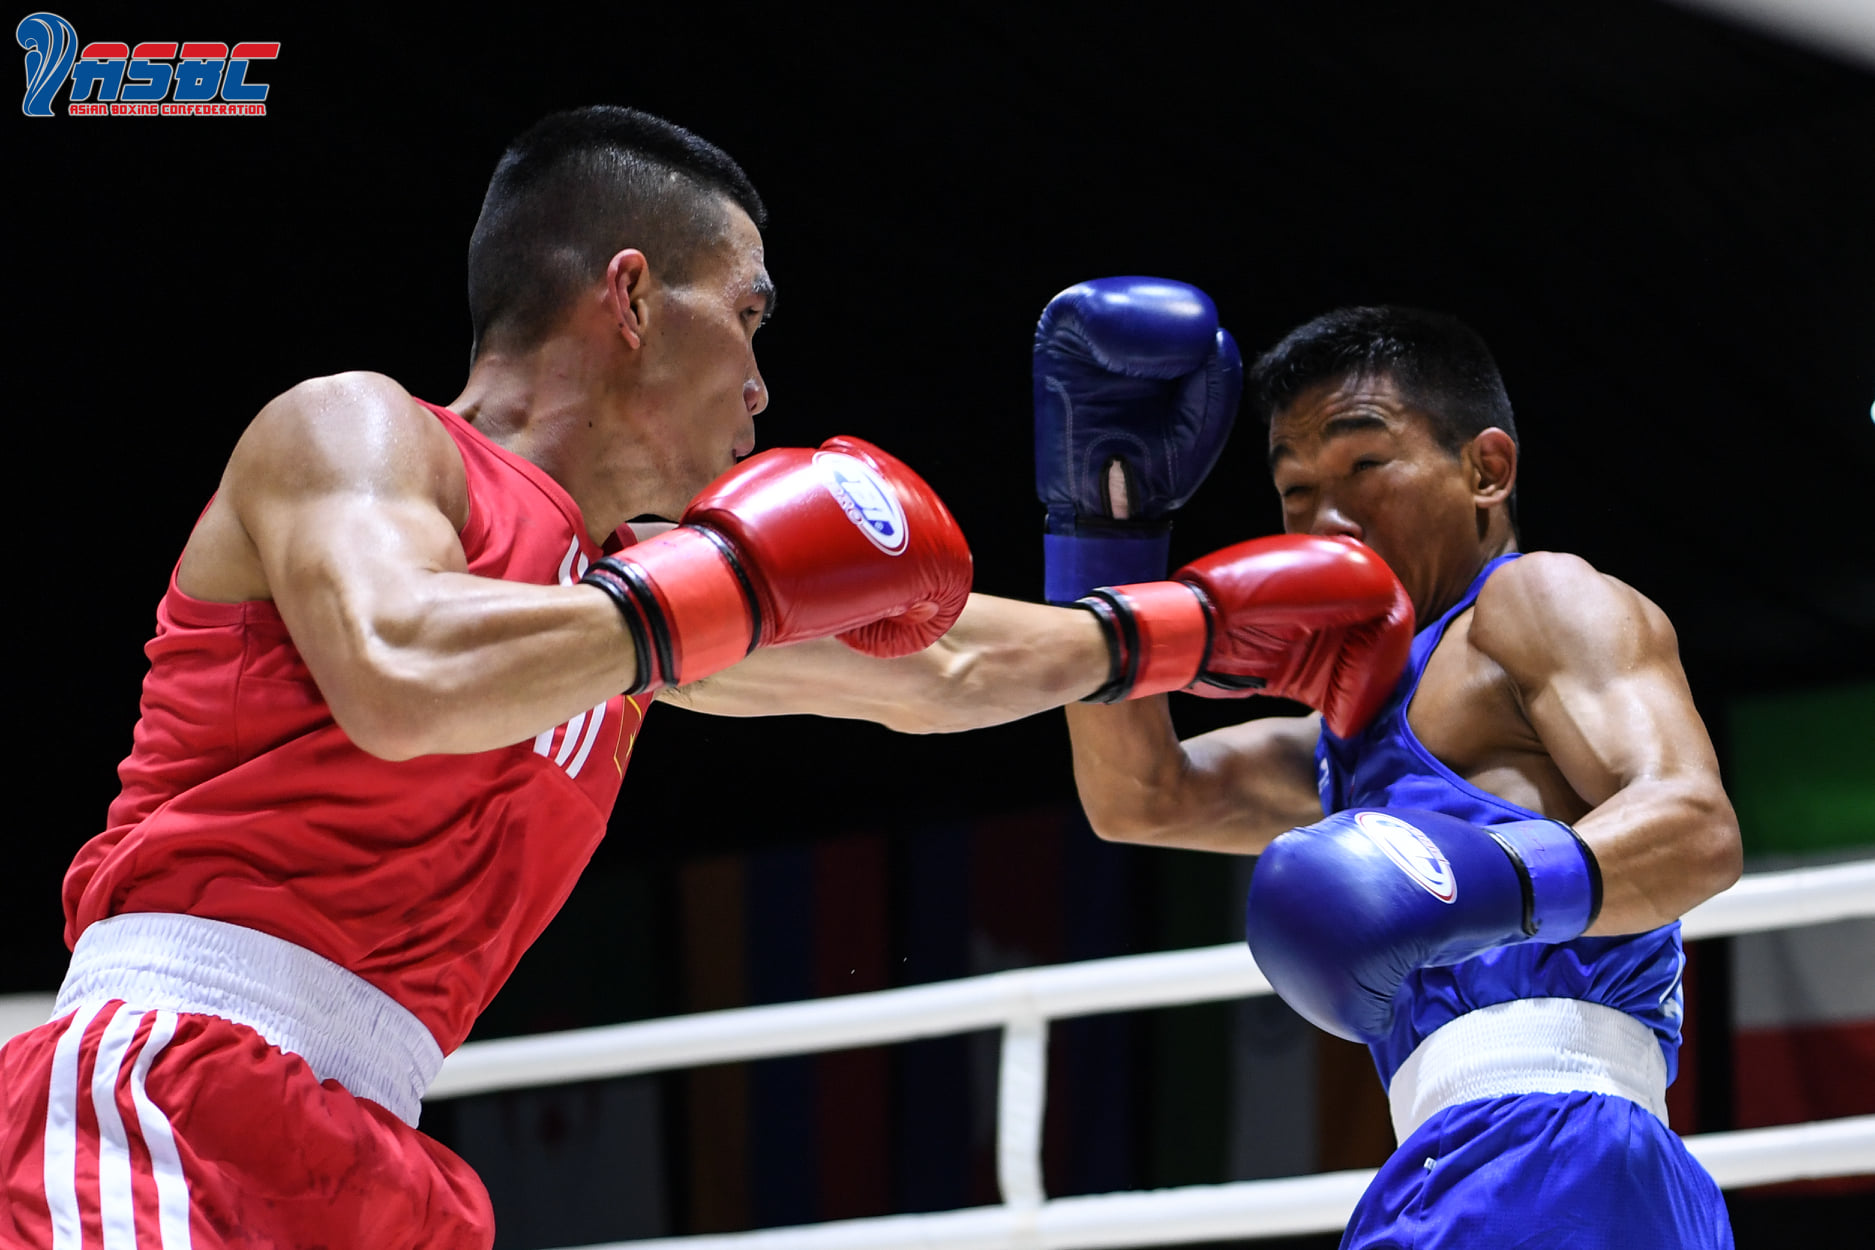 Thành Đạt, Đức Thọ nhận kết quả trái ngược ở ngày ra quân giải Boxing Thái Lan Mở rộng - Ảnh 1